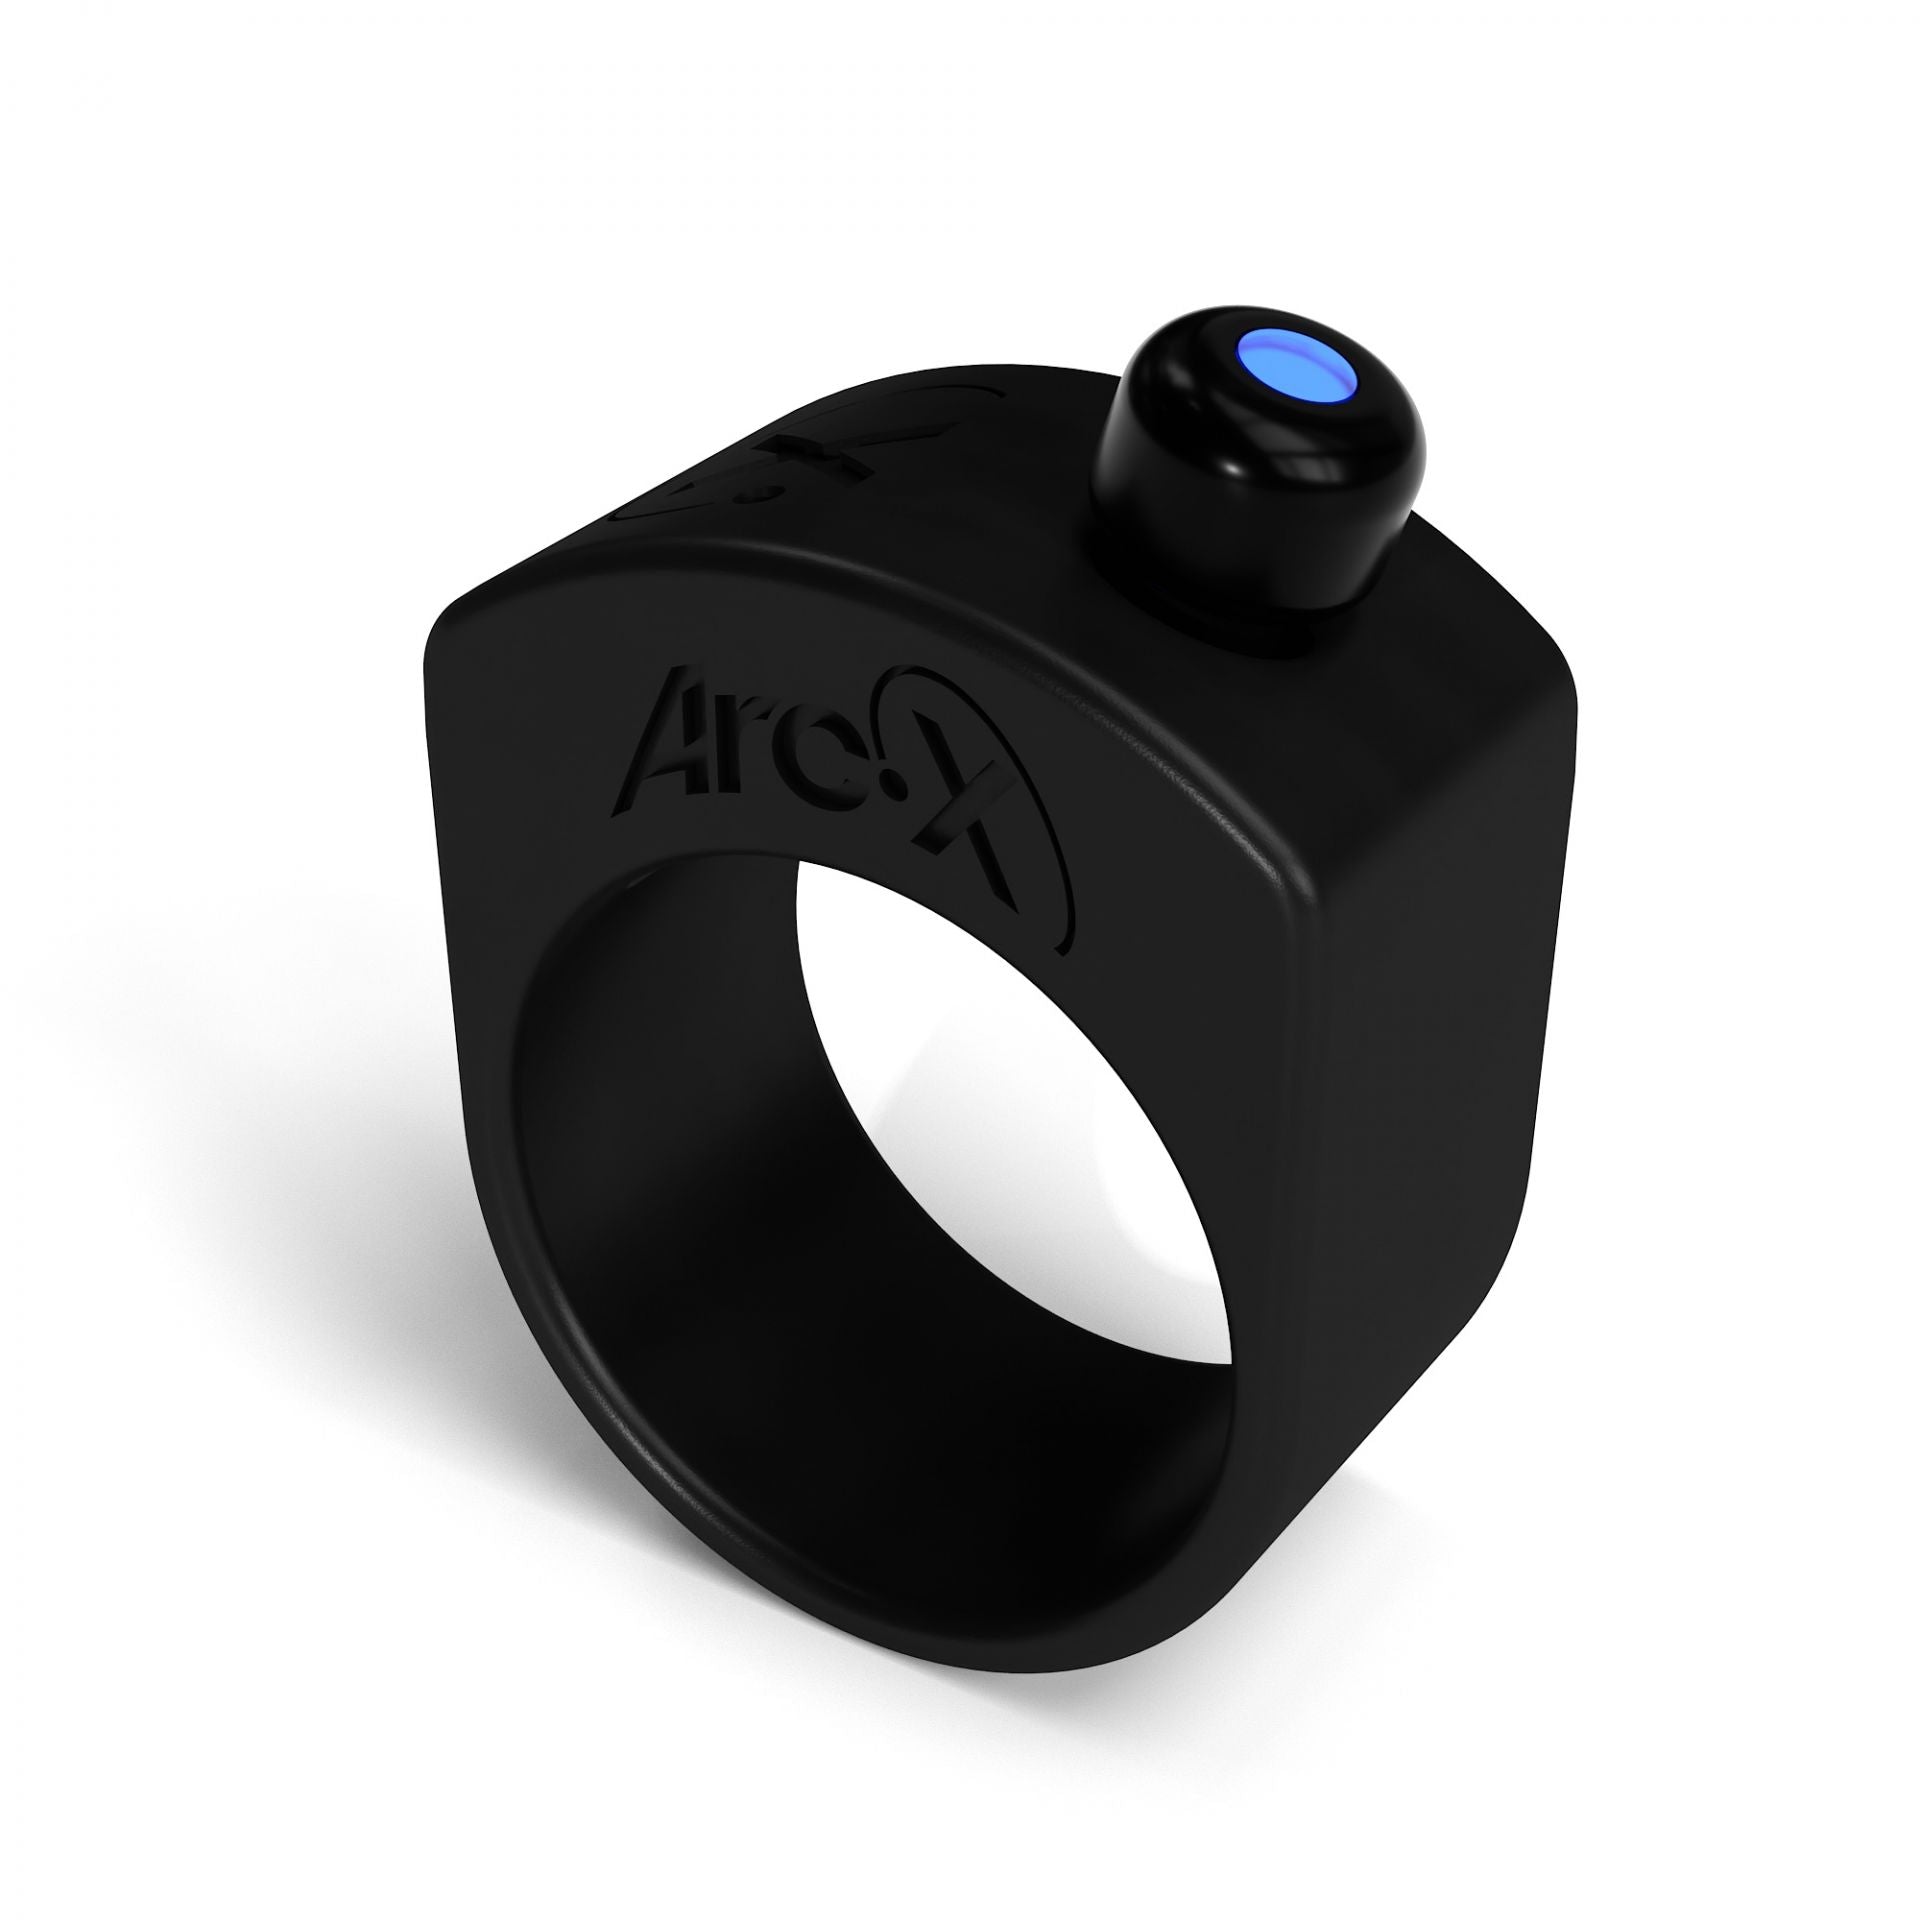 ArcX Smart Ring - Steuer dein Telefon, deinen kabellosen Lautsprecher, deine Actioncam oder ein beliebiges Bluetooth-Gerät unterwegs, ohne die Hände zu benutzen